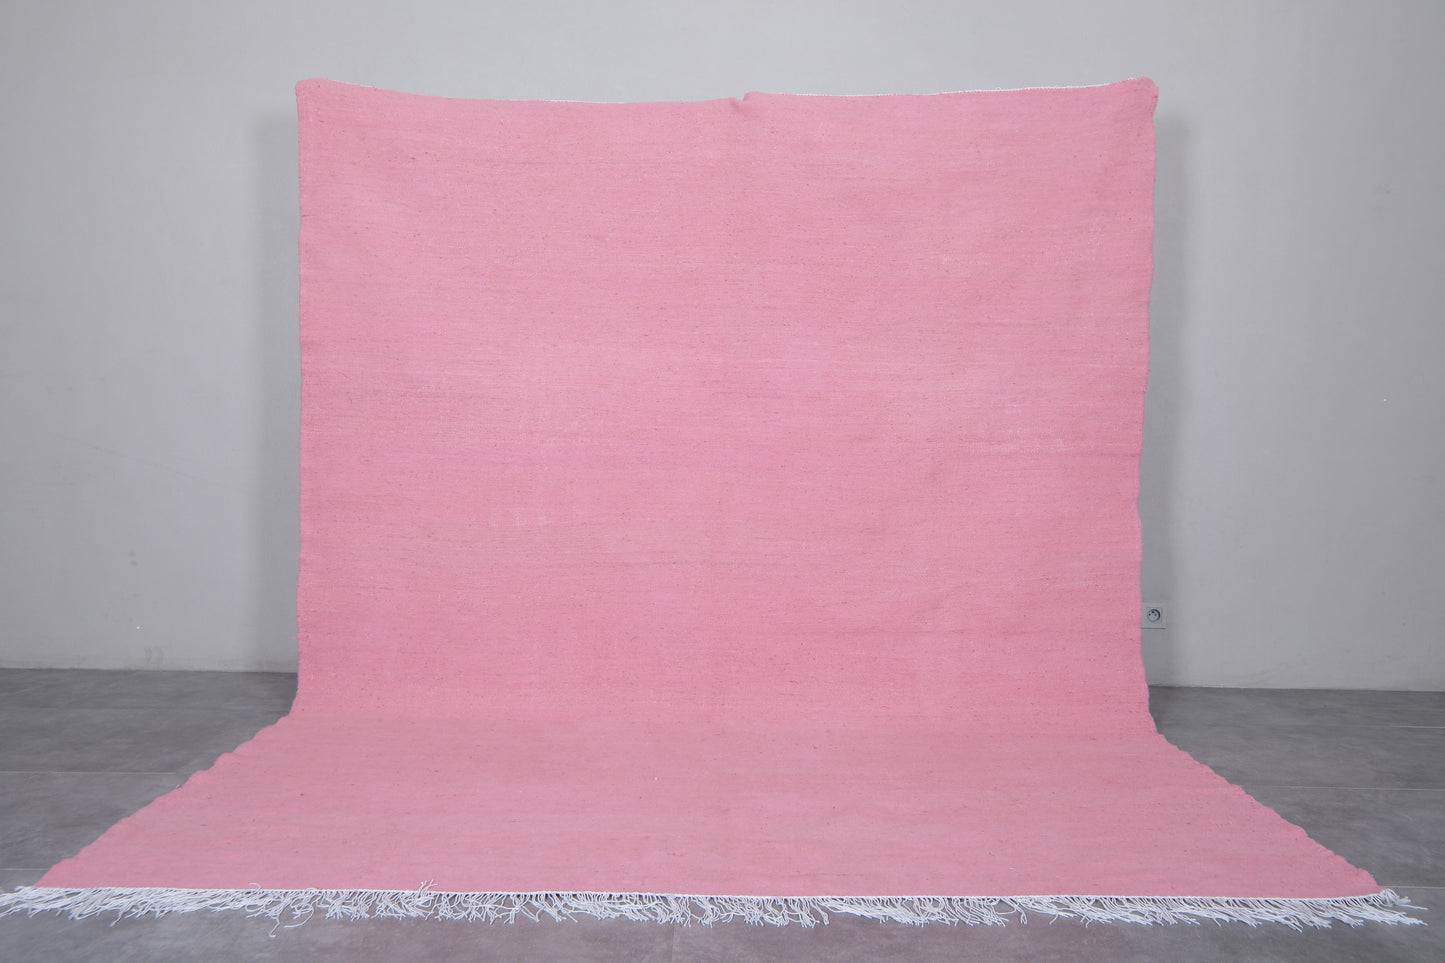 Handwoven Moroccan rug - Pink Kilim rug